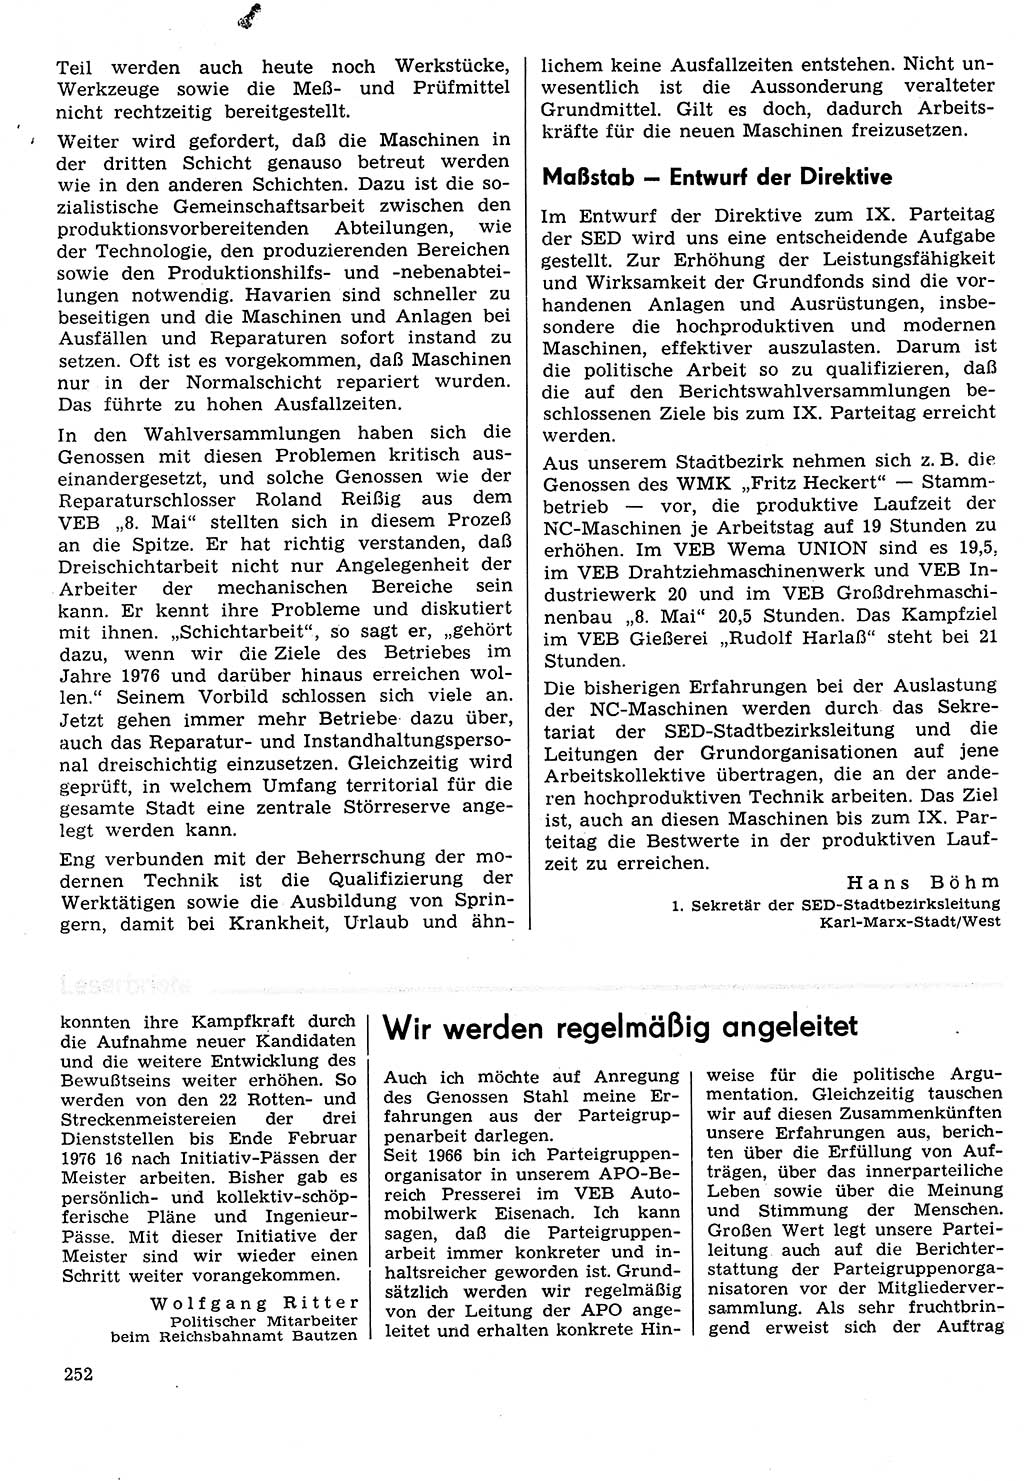 Neuer Weg (NW), Organ des Zentralkomitees (ZK) der SED (Sozialistische Einheitspartei Deutschlands) für Fragen des Parteilebens, 31. Jahrgang [Deutsche Demokratische Republik (DDR)] 1976, Seite 252 (NW ZK SED DDR 1976, S. 252)